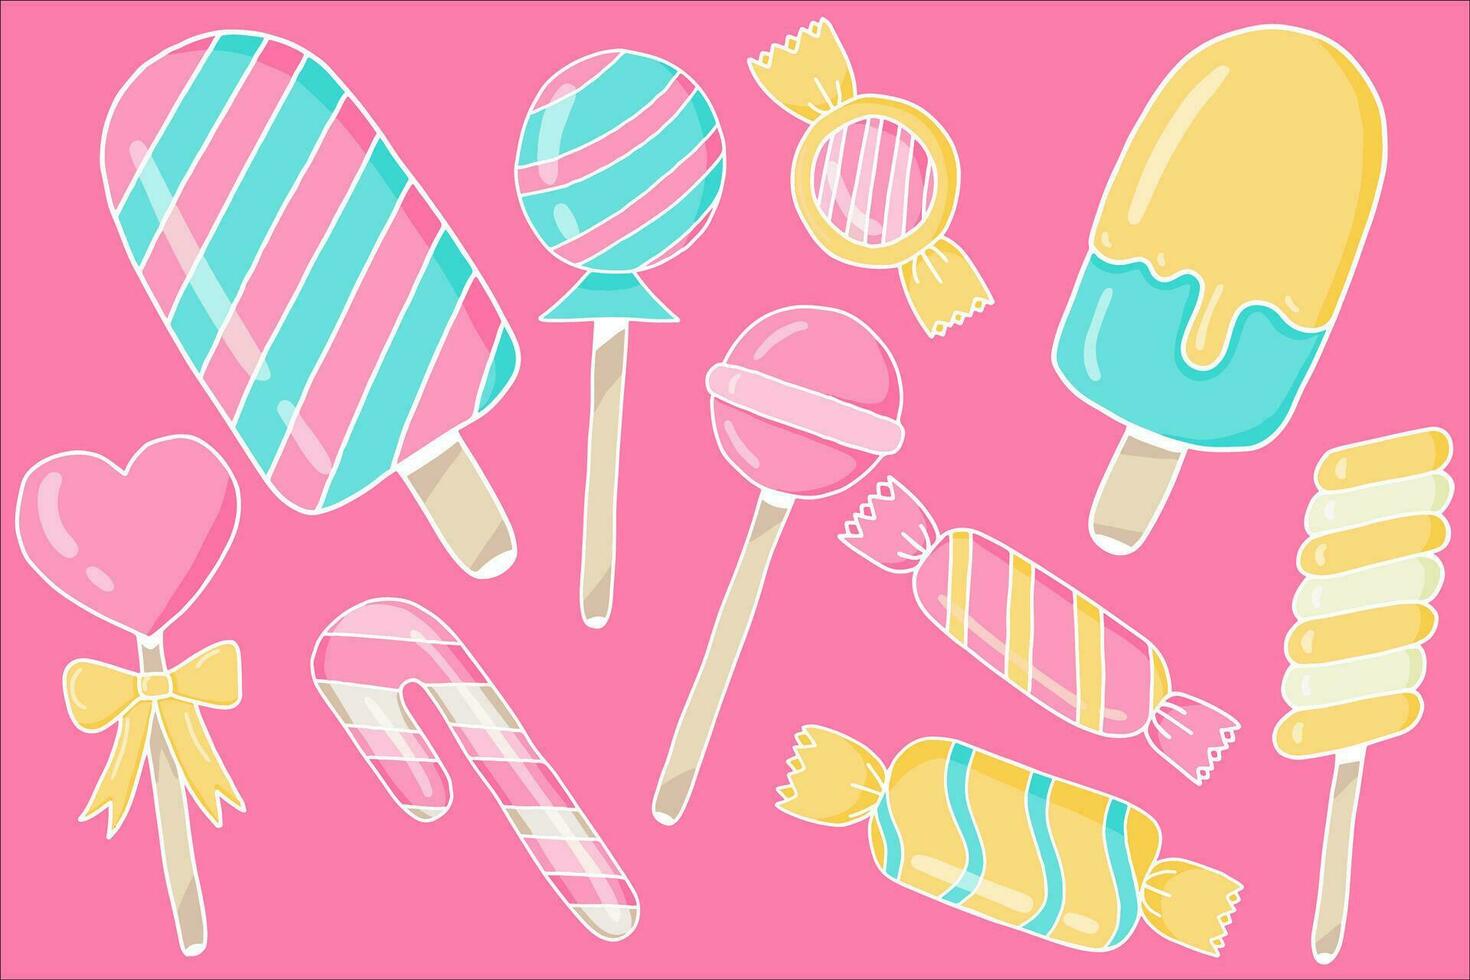 godis, klubba, socker kola i omslag, tandkött och vriden marshmallow på pinne. vektor uppsättning av sötsaker, spiral klubbor, randig bonbons och tuggummi isolerat på rosa bakgrund